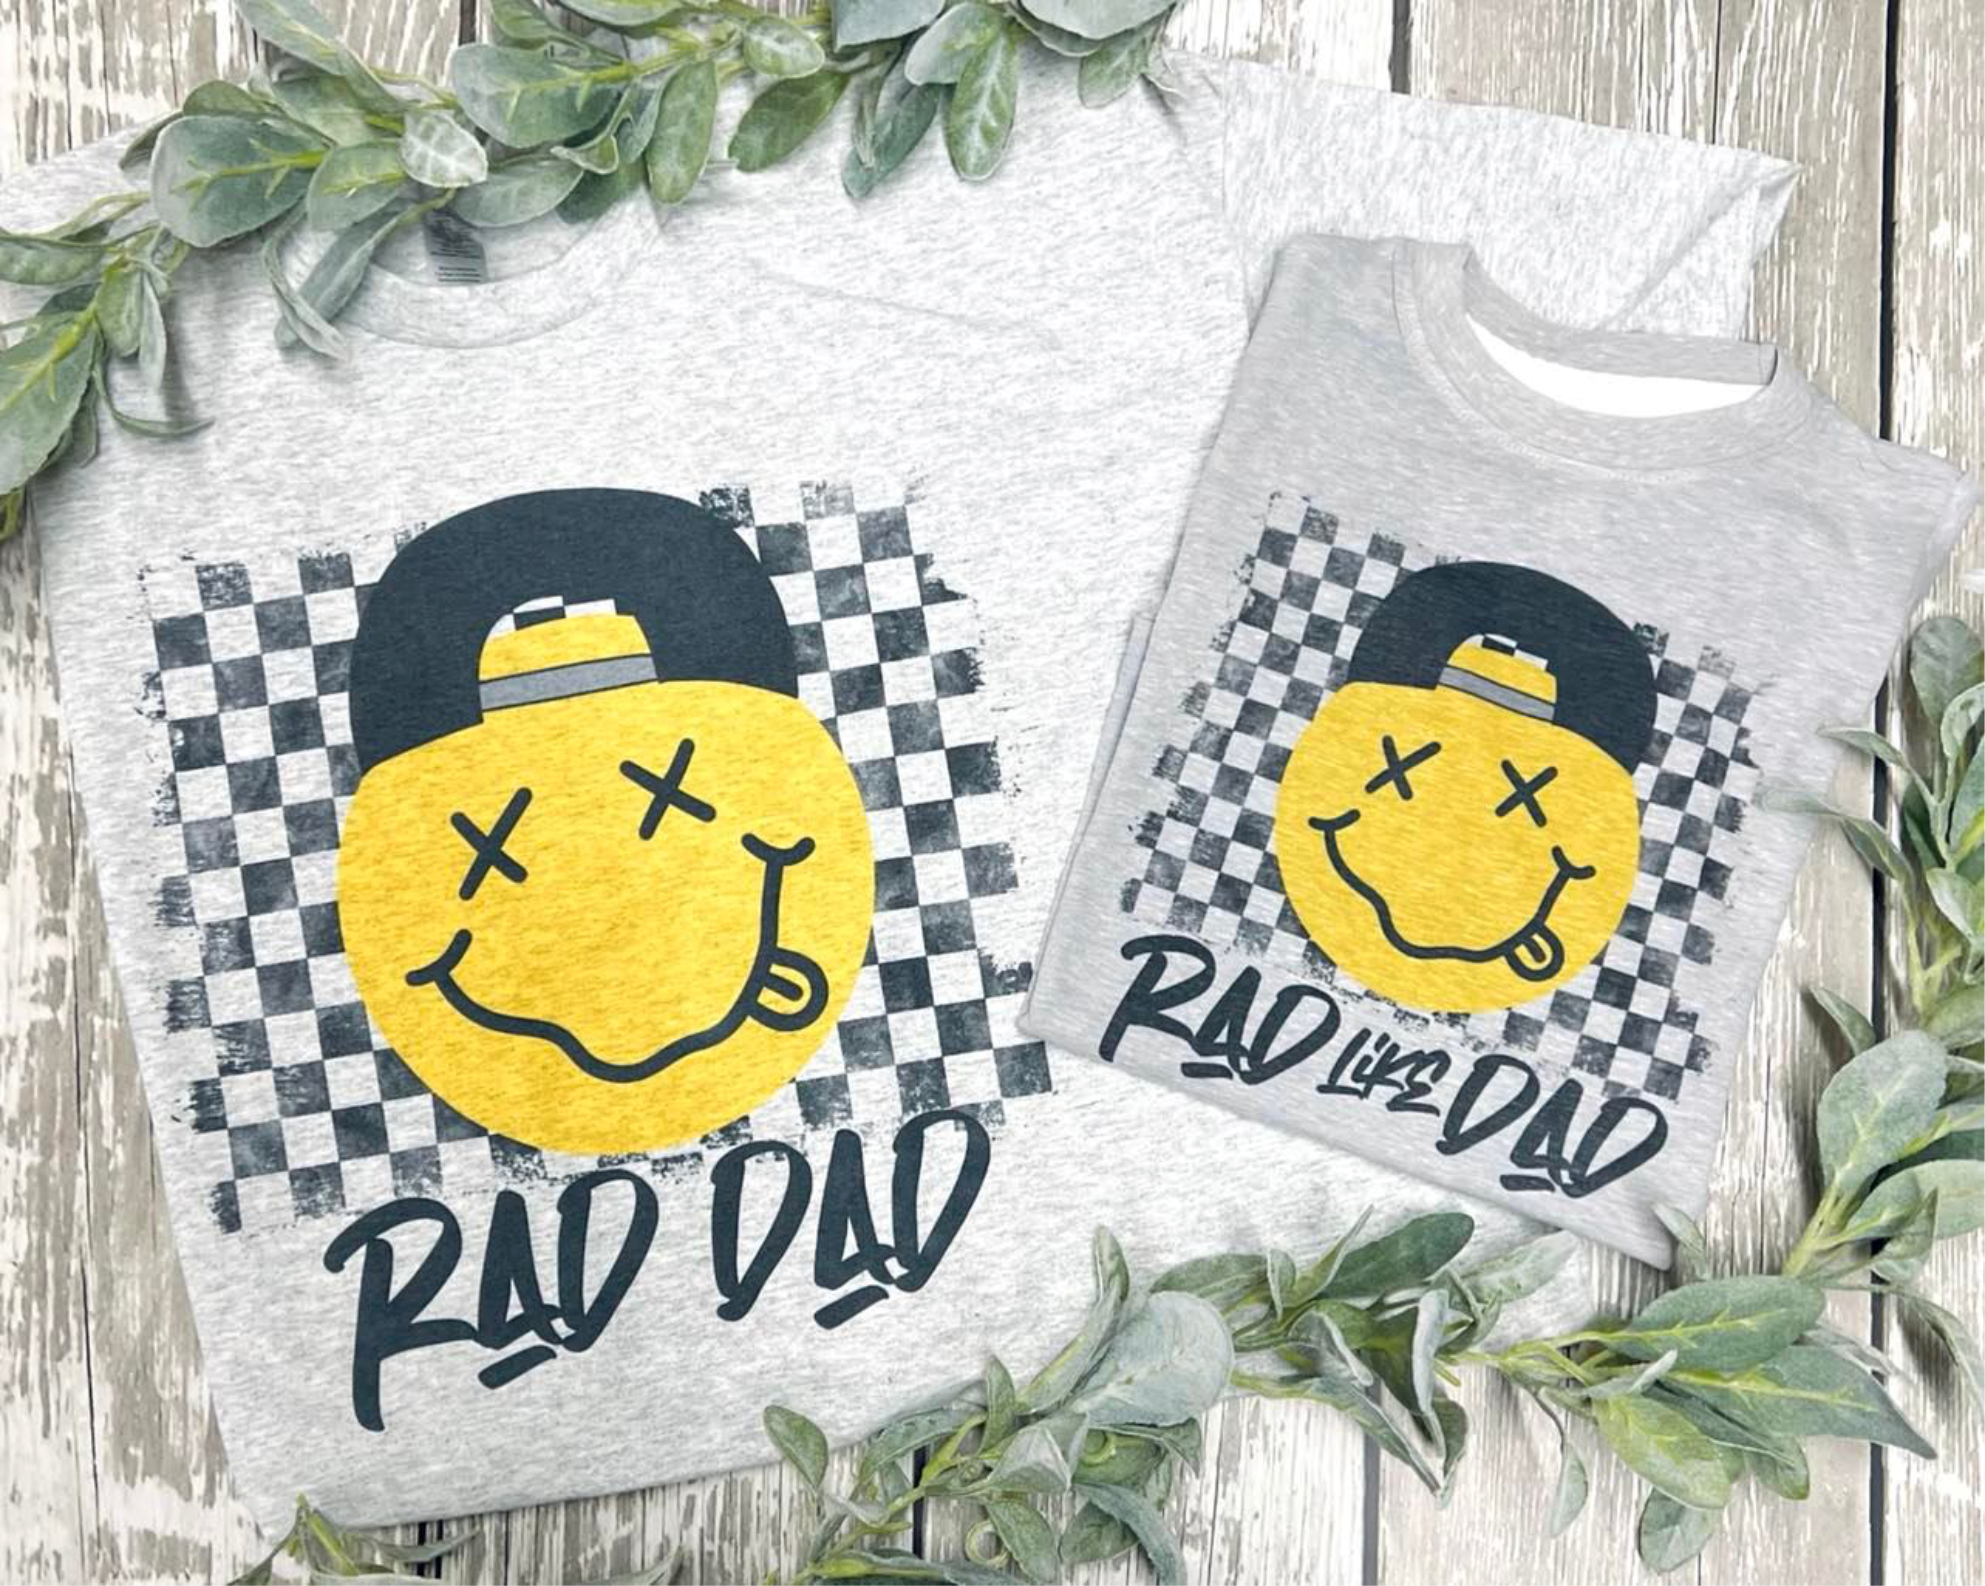 Rad Dad & Like Dad Grey Tee